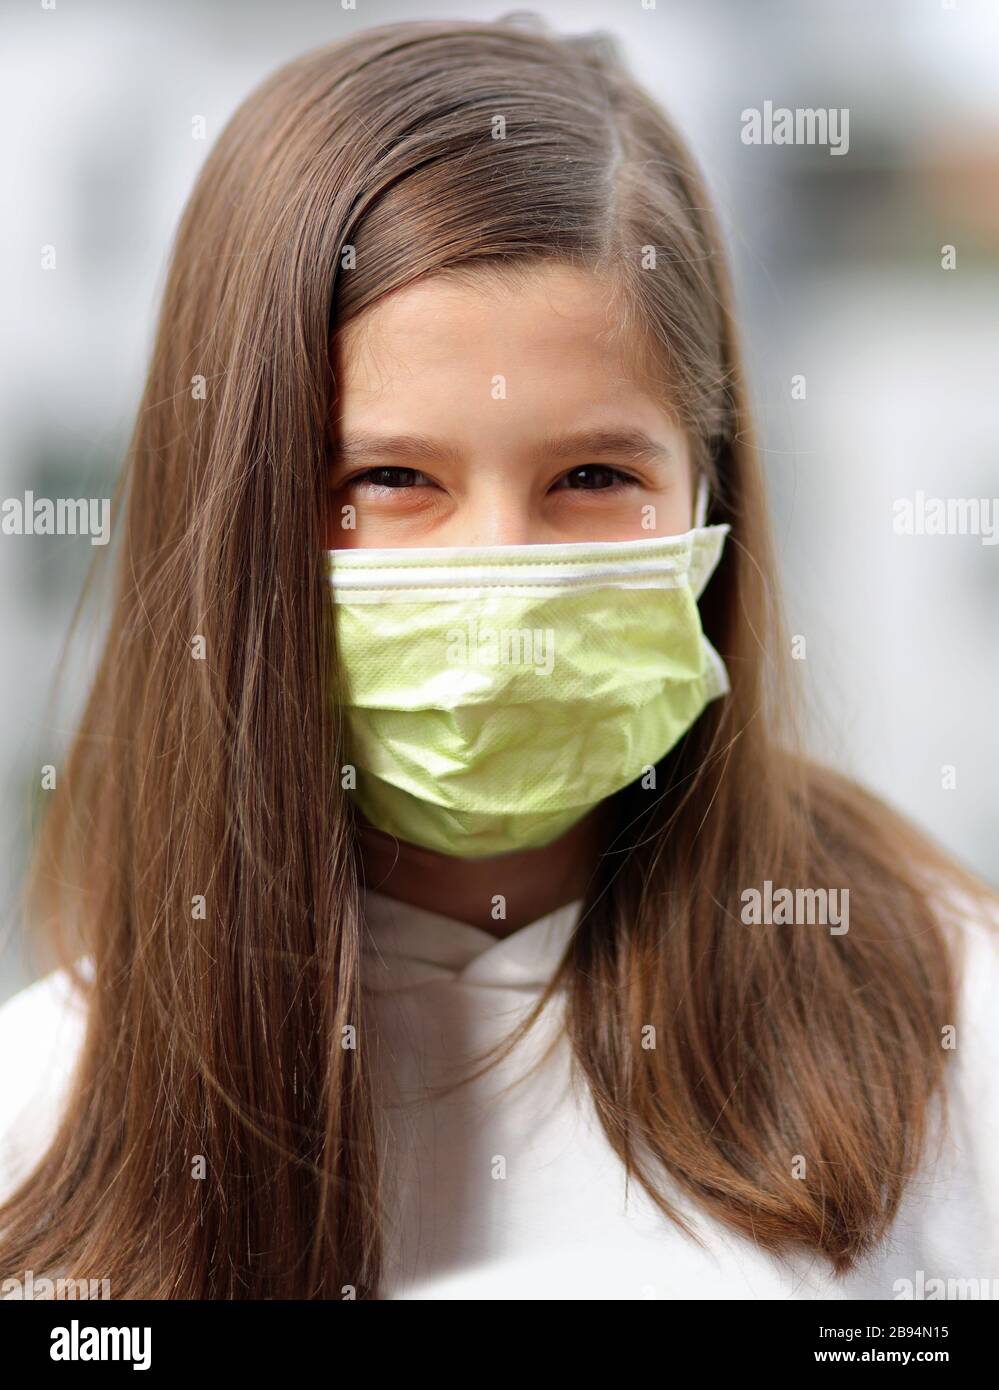 Junge Mädchen mit langen braunen Haaren tragen eine chirurgische Maske, um die Atemwege vor dem Corona-Virus zu schützen Stockfoto